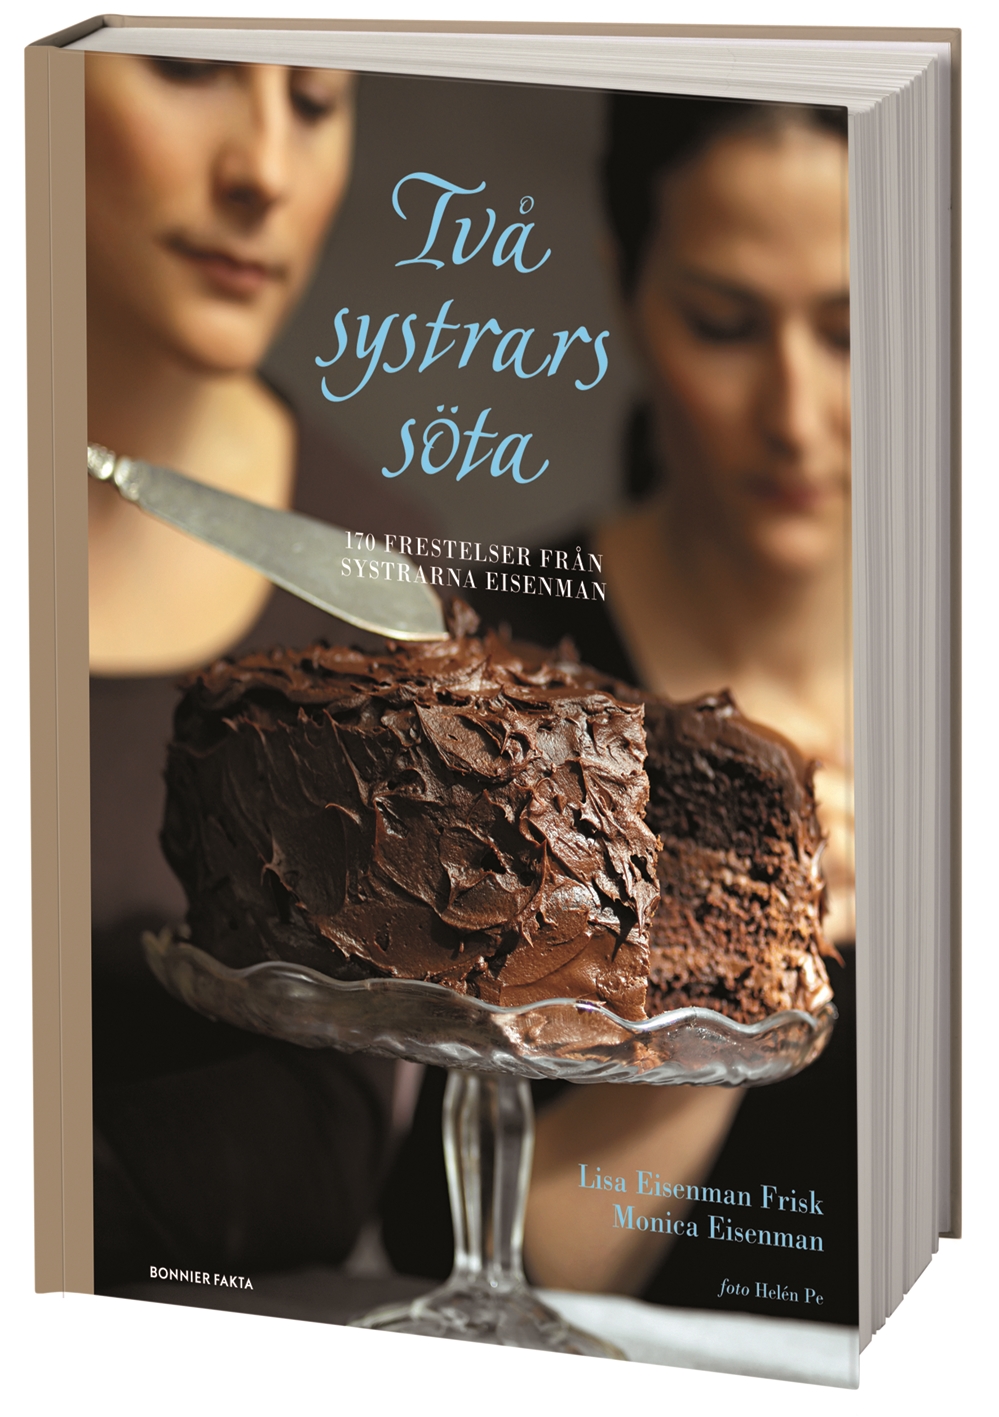 Två Systrars Söta - 170 Frestelser Från The Cookbook Café